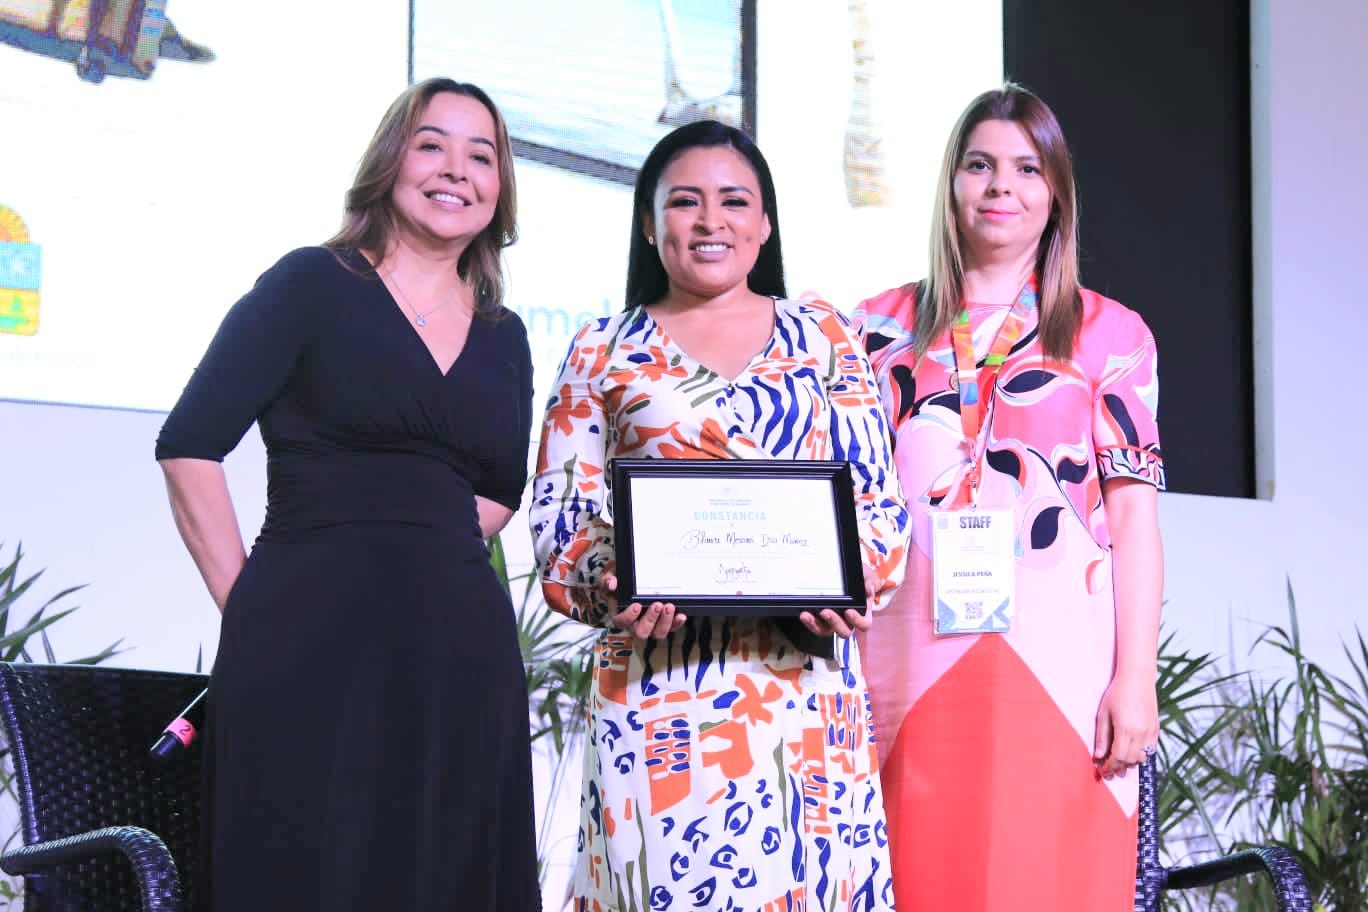 Presenta Blanca Merari plataforma “Hola Puerto Morelos” en el World Tourism Trends Summit 